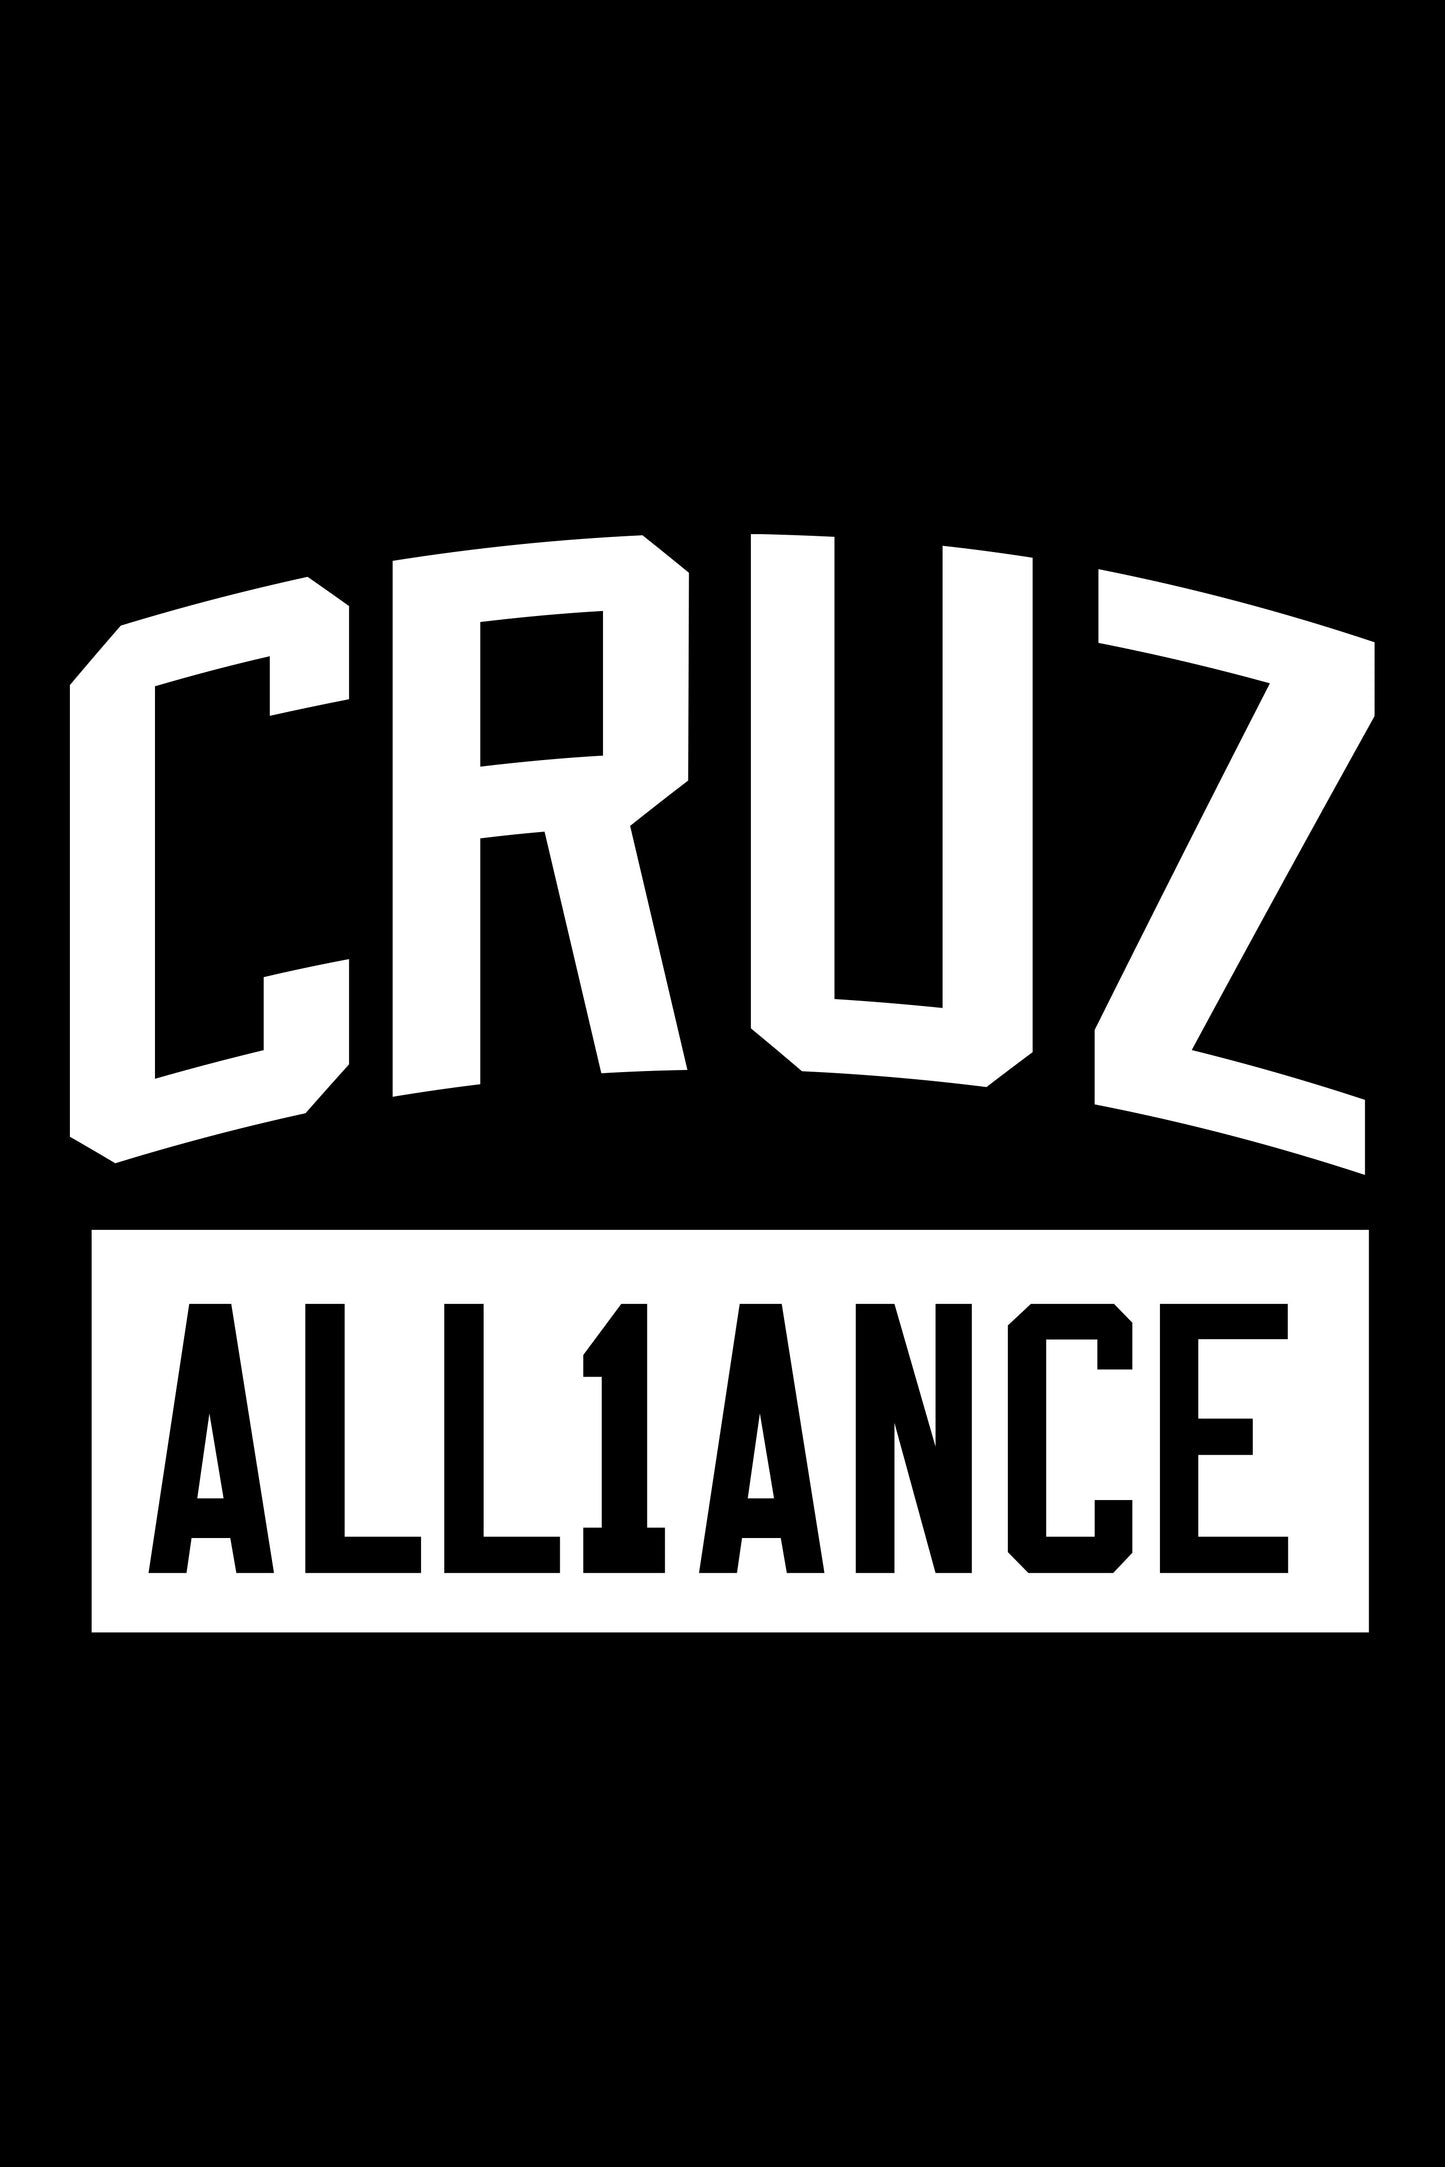 Dominick Cruz “CruzAll1ance” Adult T Shirt